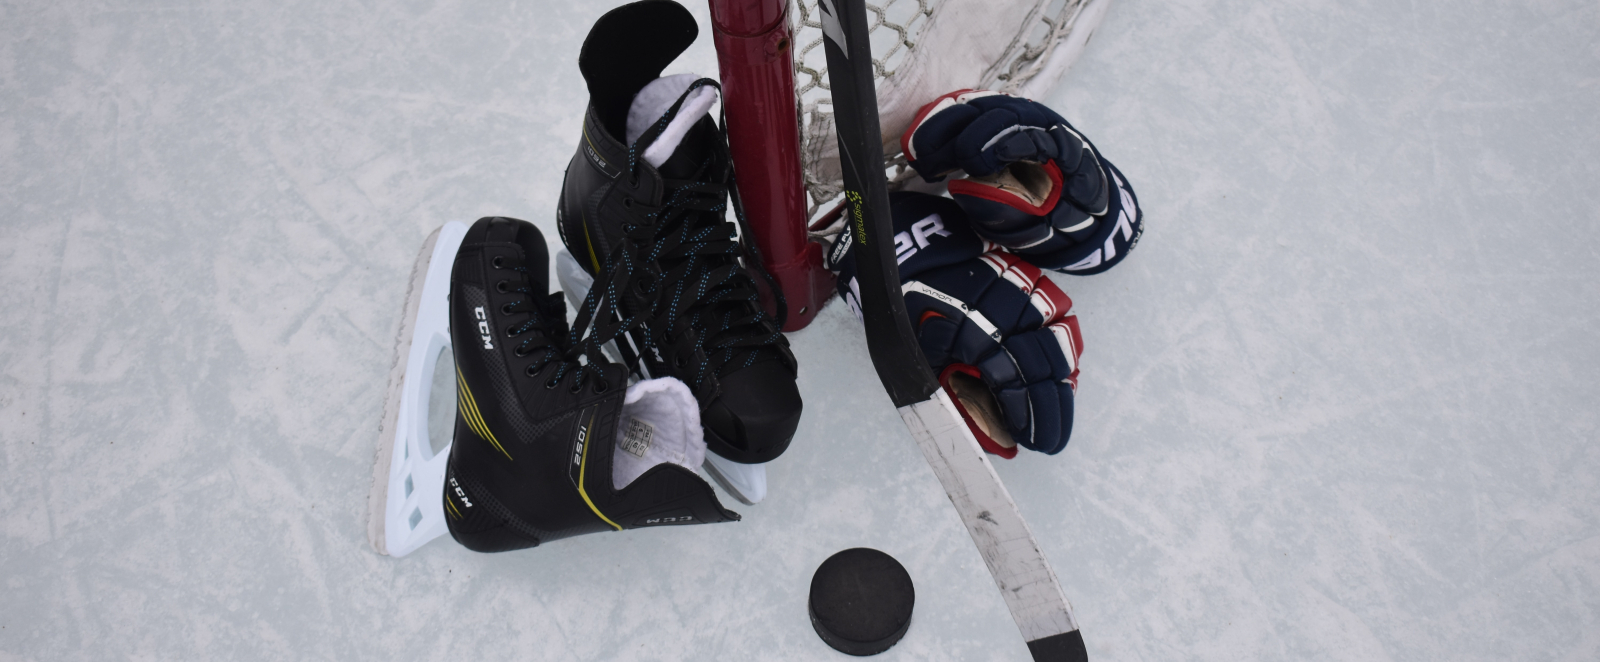 Eishockey-Ausrüstung auf Eis